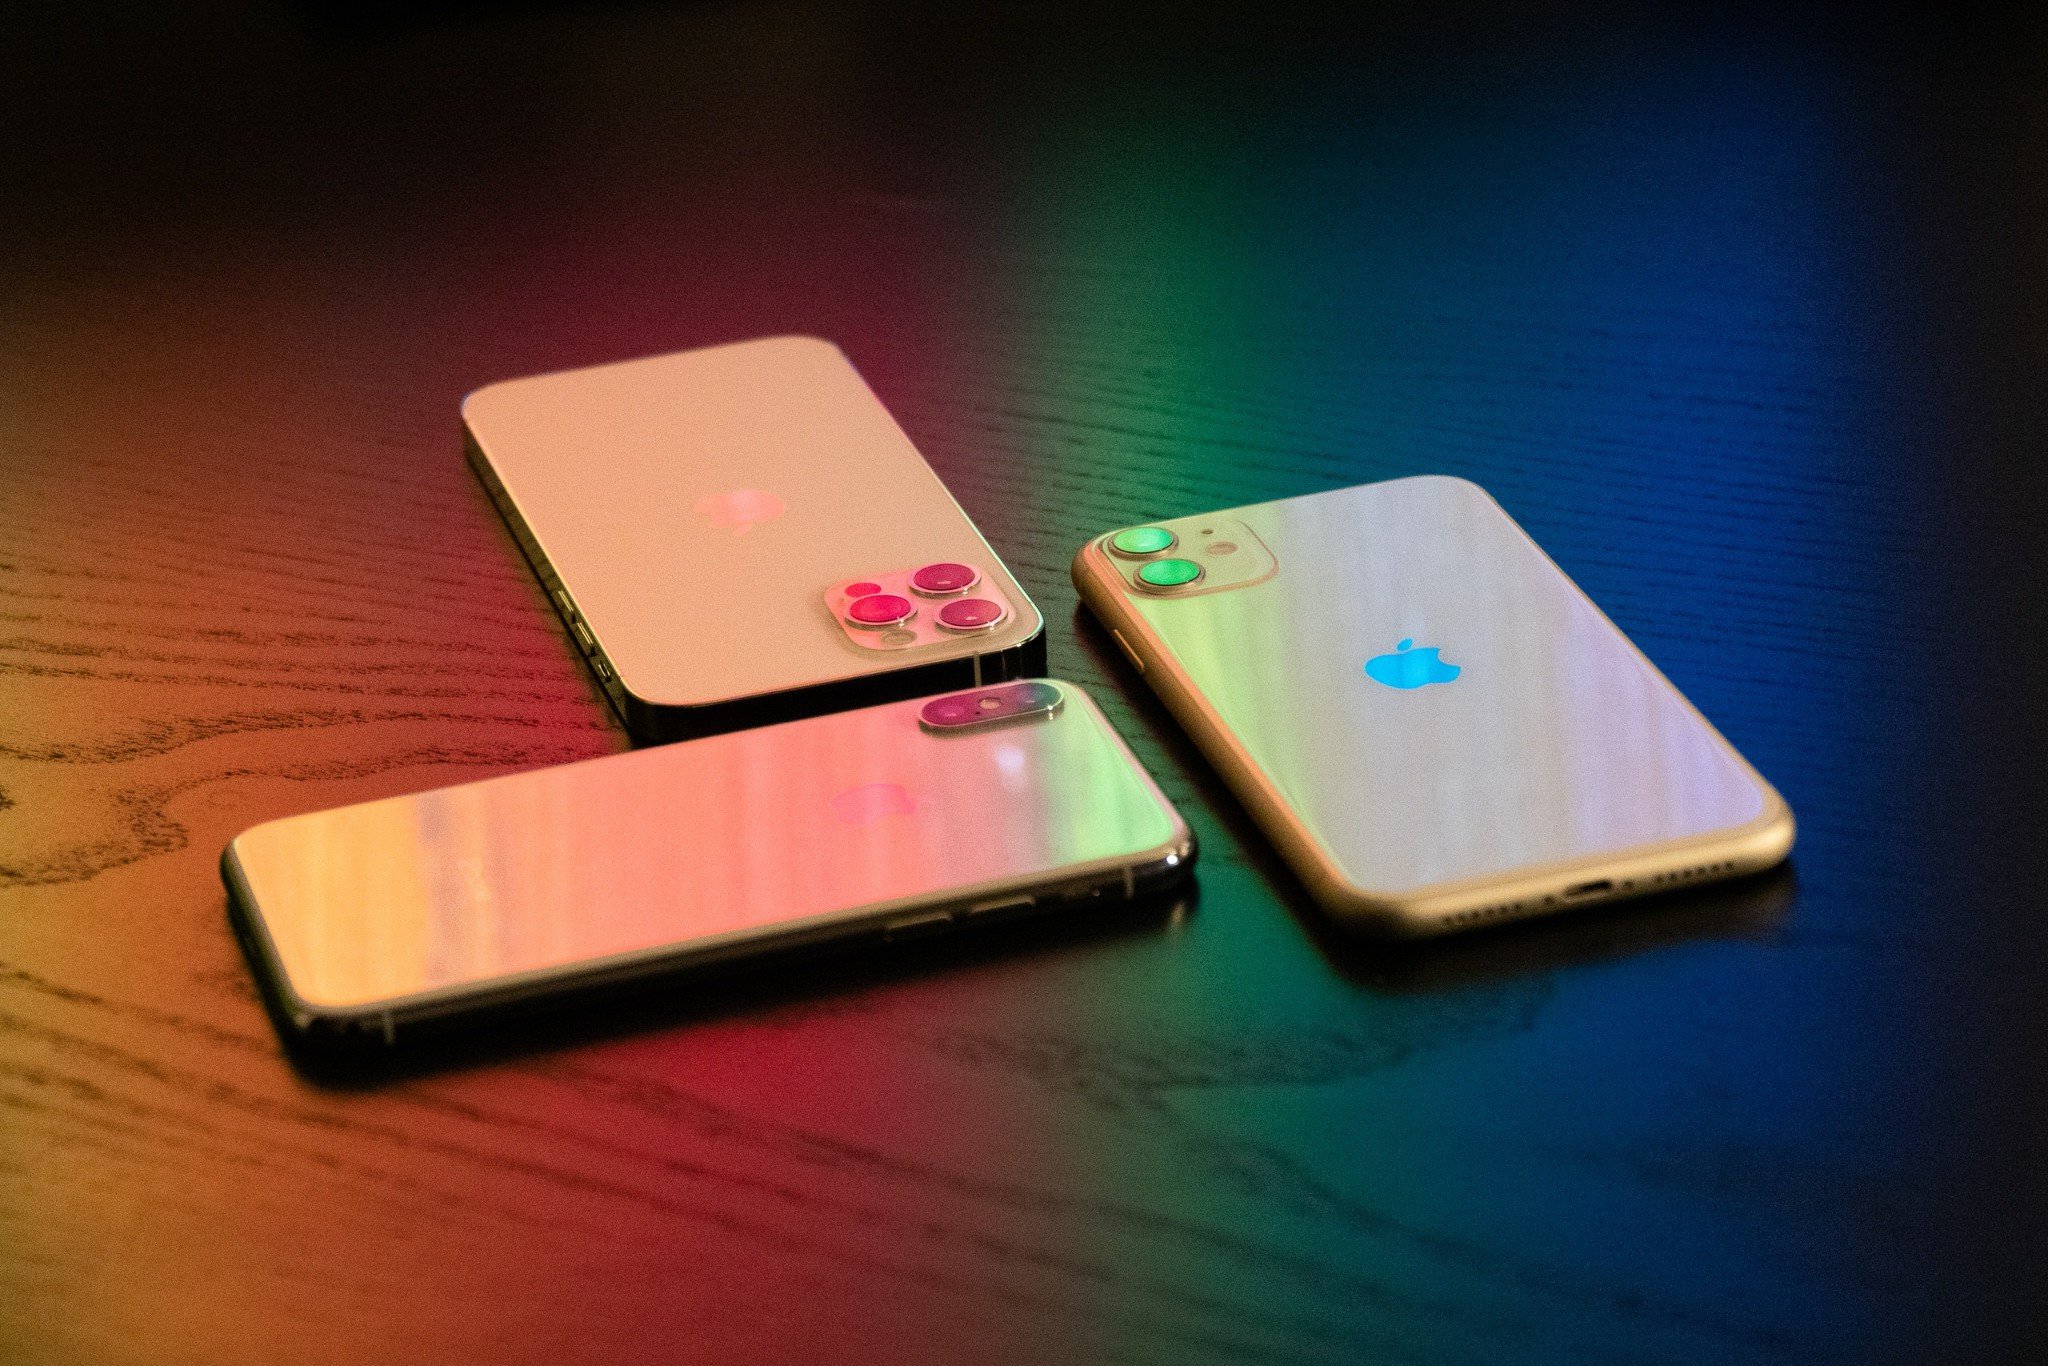 iPhone 13 sẽ có 4 phiên bản như iPhone 12, phiên bản Pro sẽ nâng cấp mạnh camera góc siêu rộng